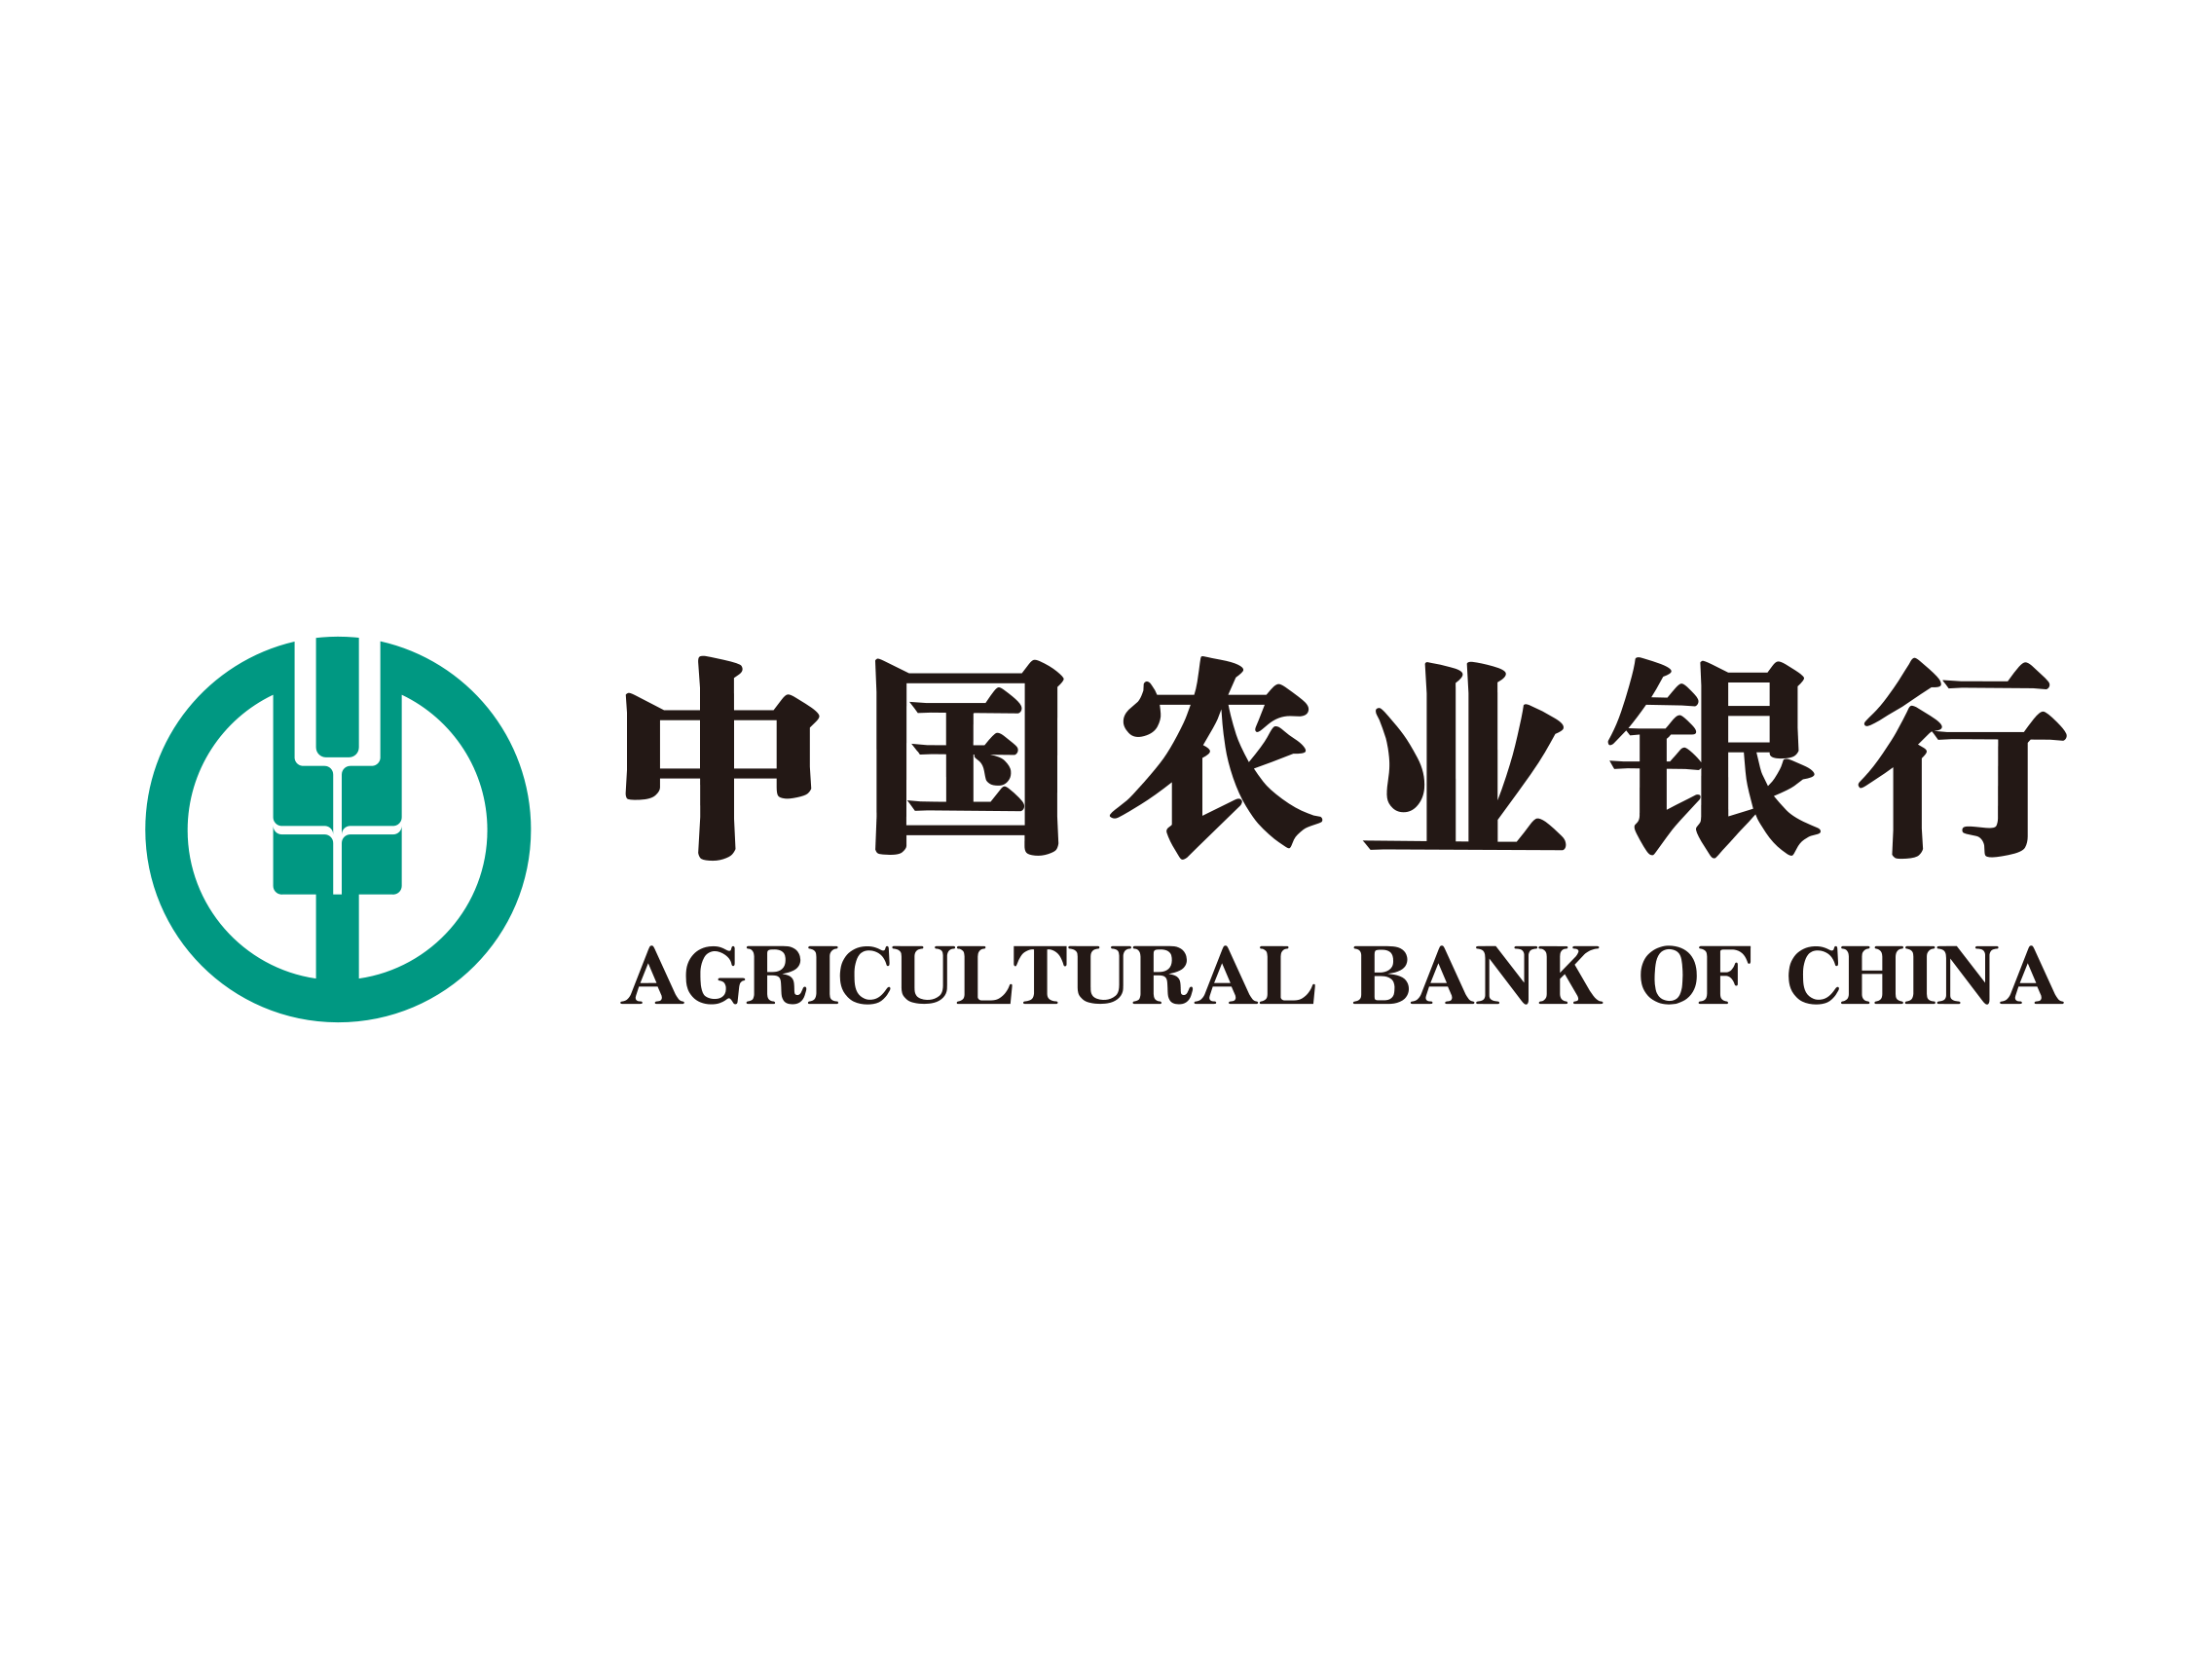 Logo Agricultural Bank Of China Png - Agricultural Bank Of China Logo, Transparent background PNG HD thumbnail